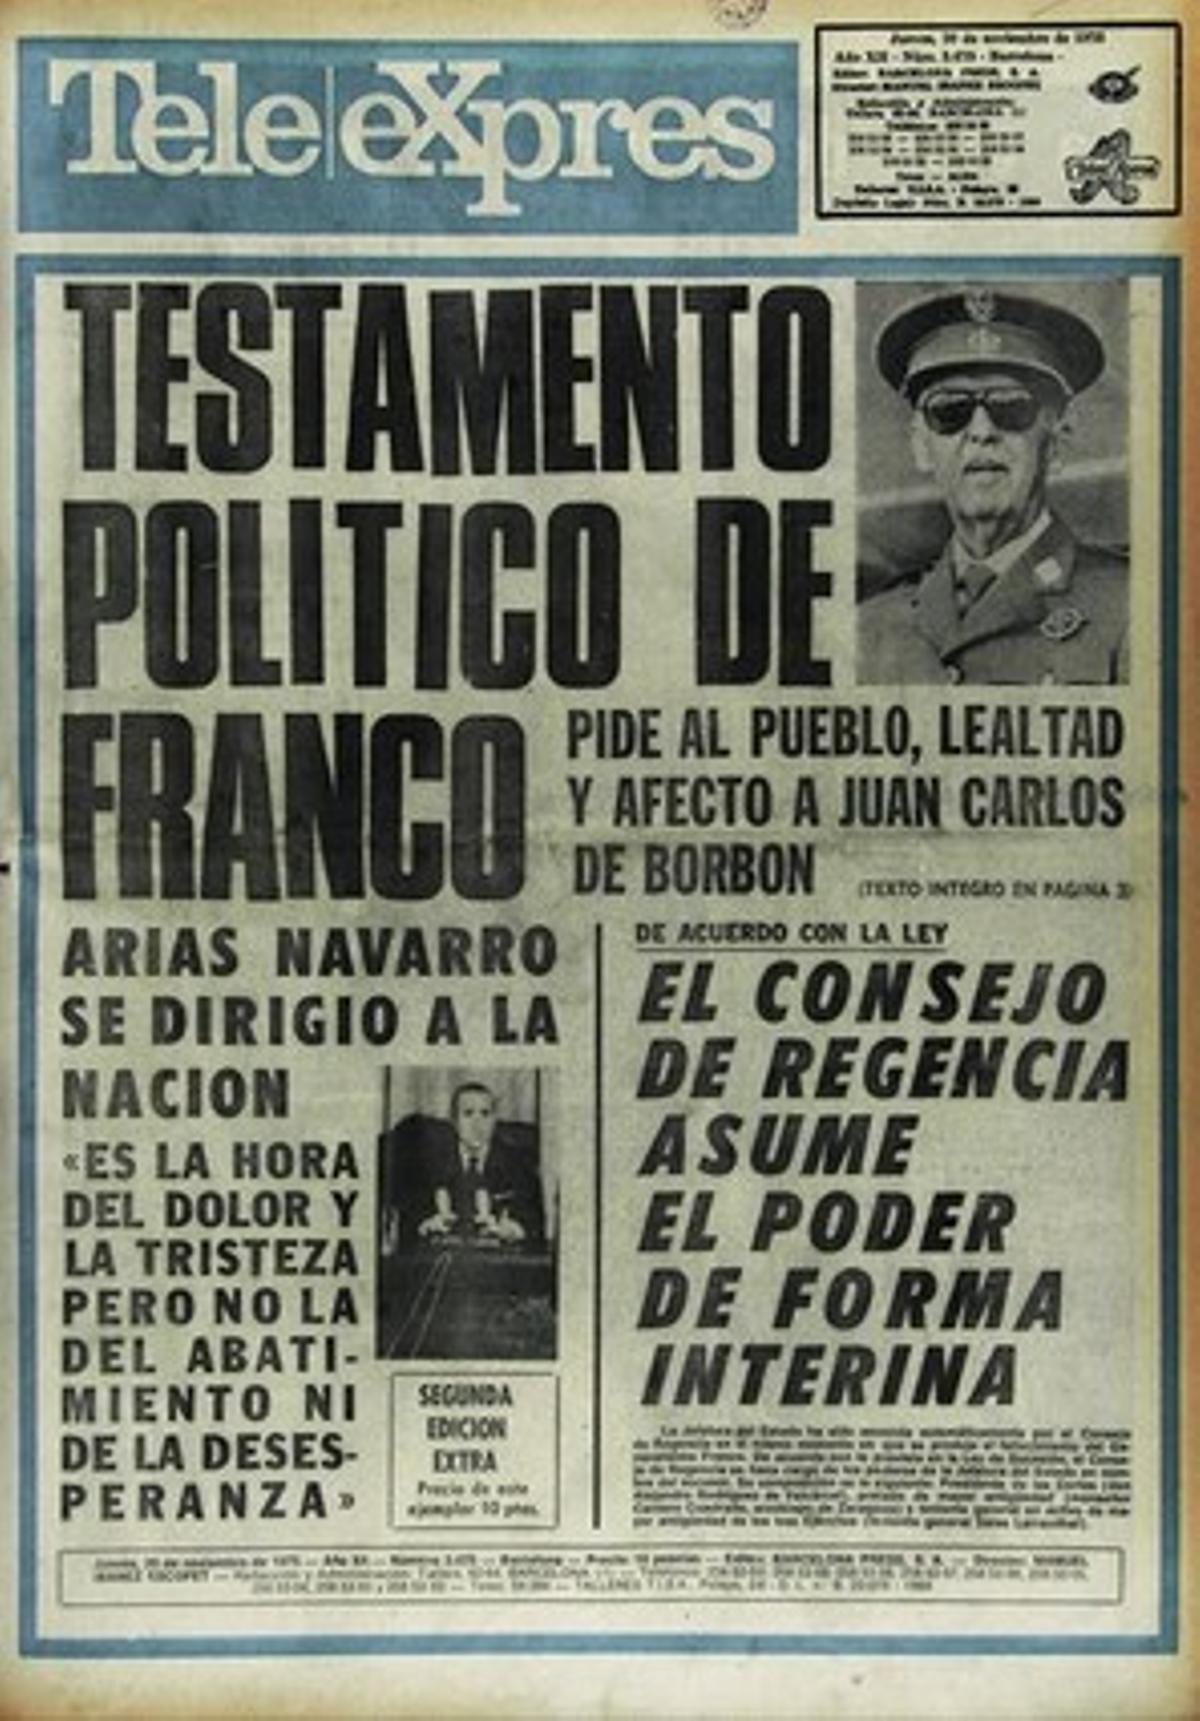 40 aniversari de la mort de Franco. Portades de premsa.